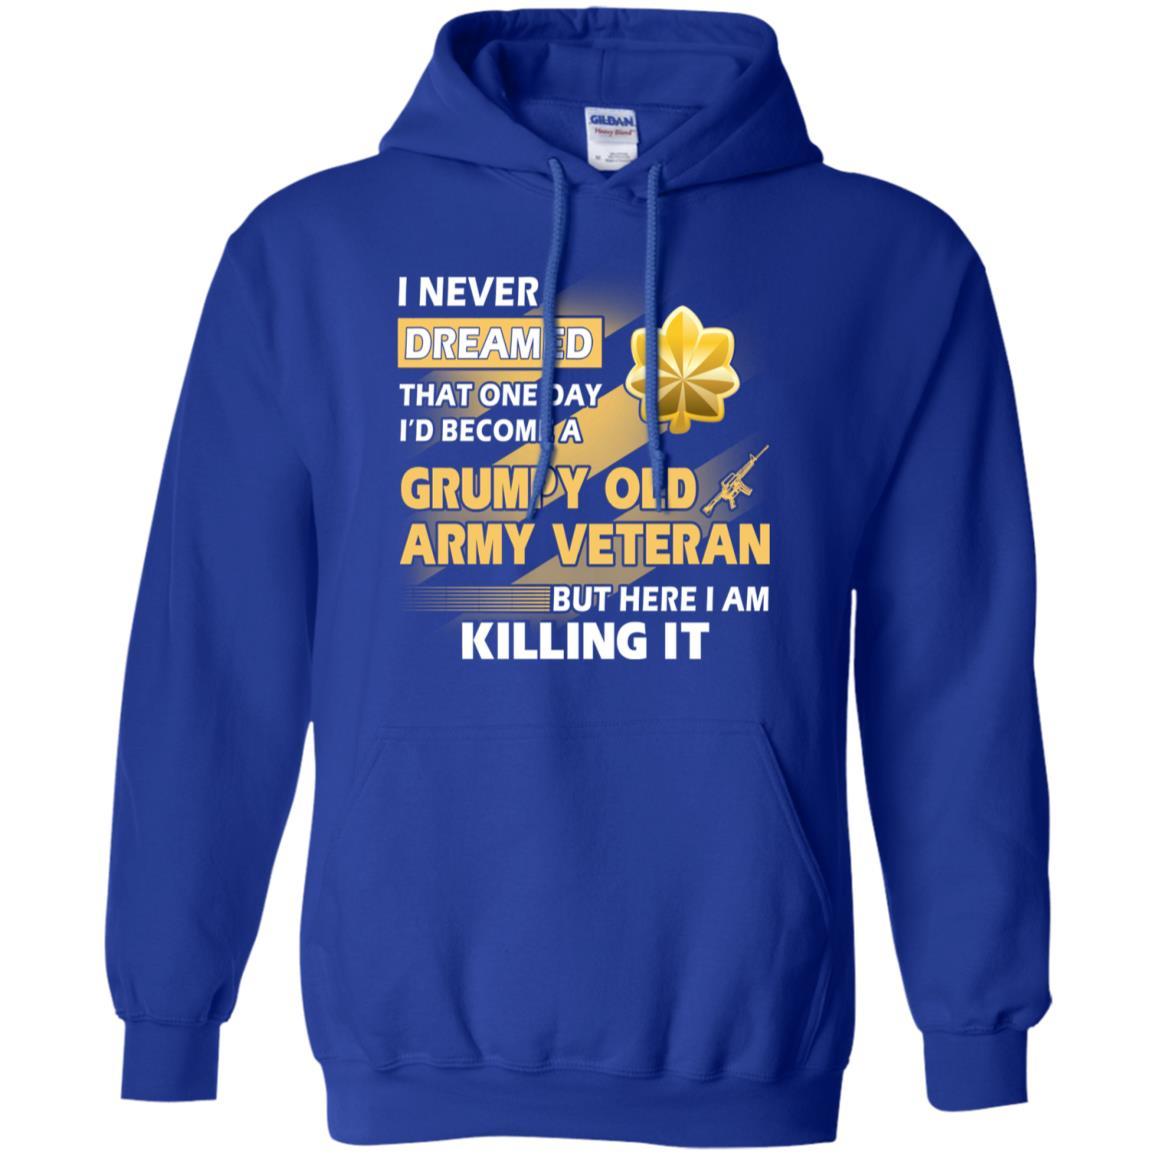 US Army T-Shirt "Grumpy Old Veteran" O-4 Major(MAJ) On Front-TShirt-Army-Veterans Nation